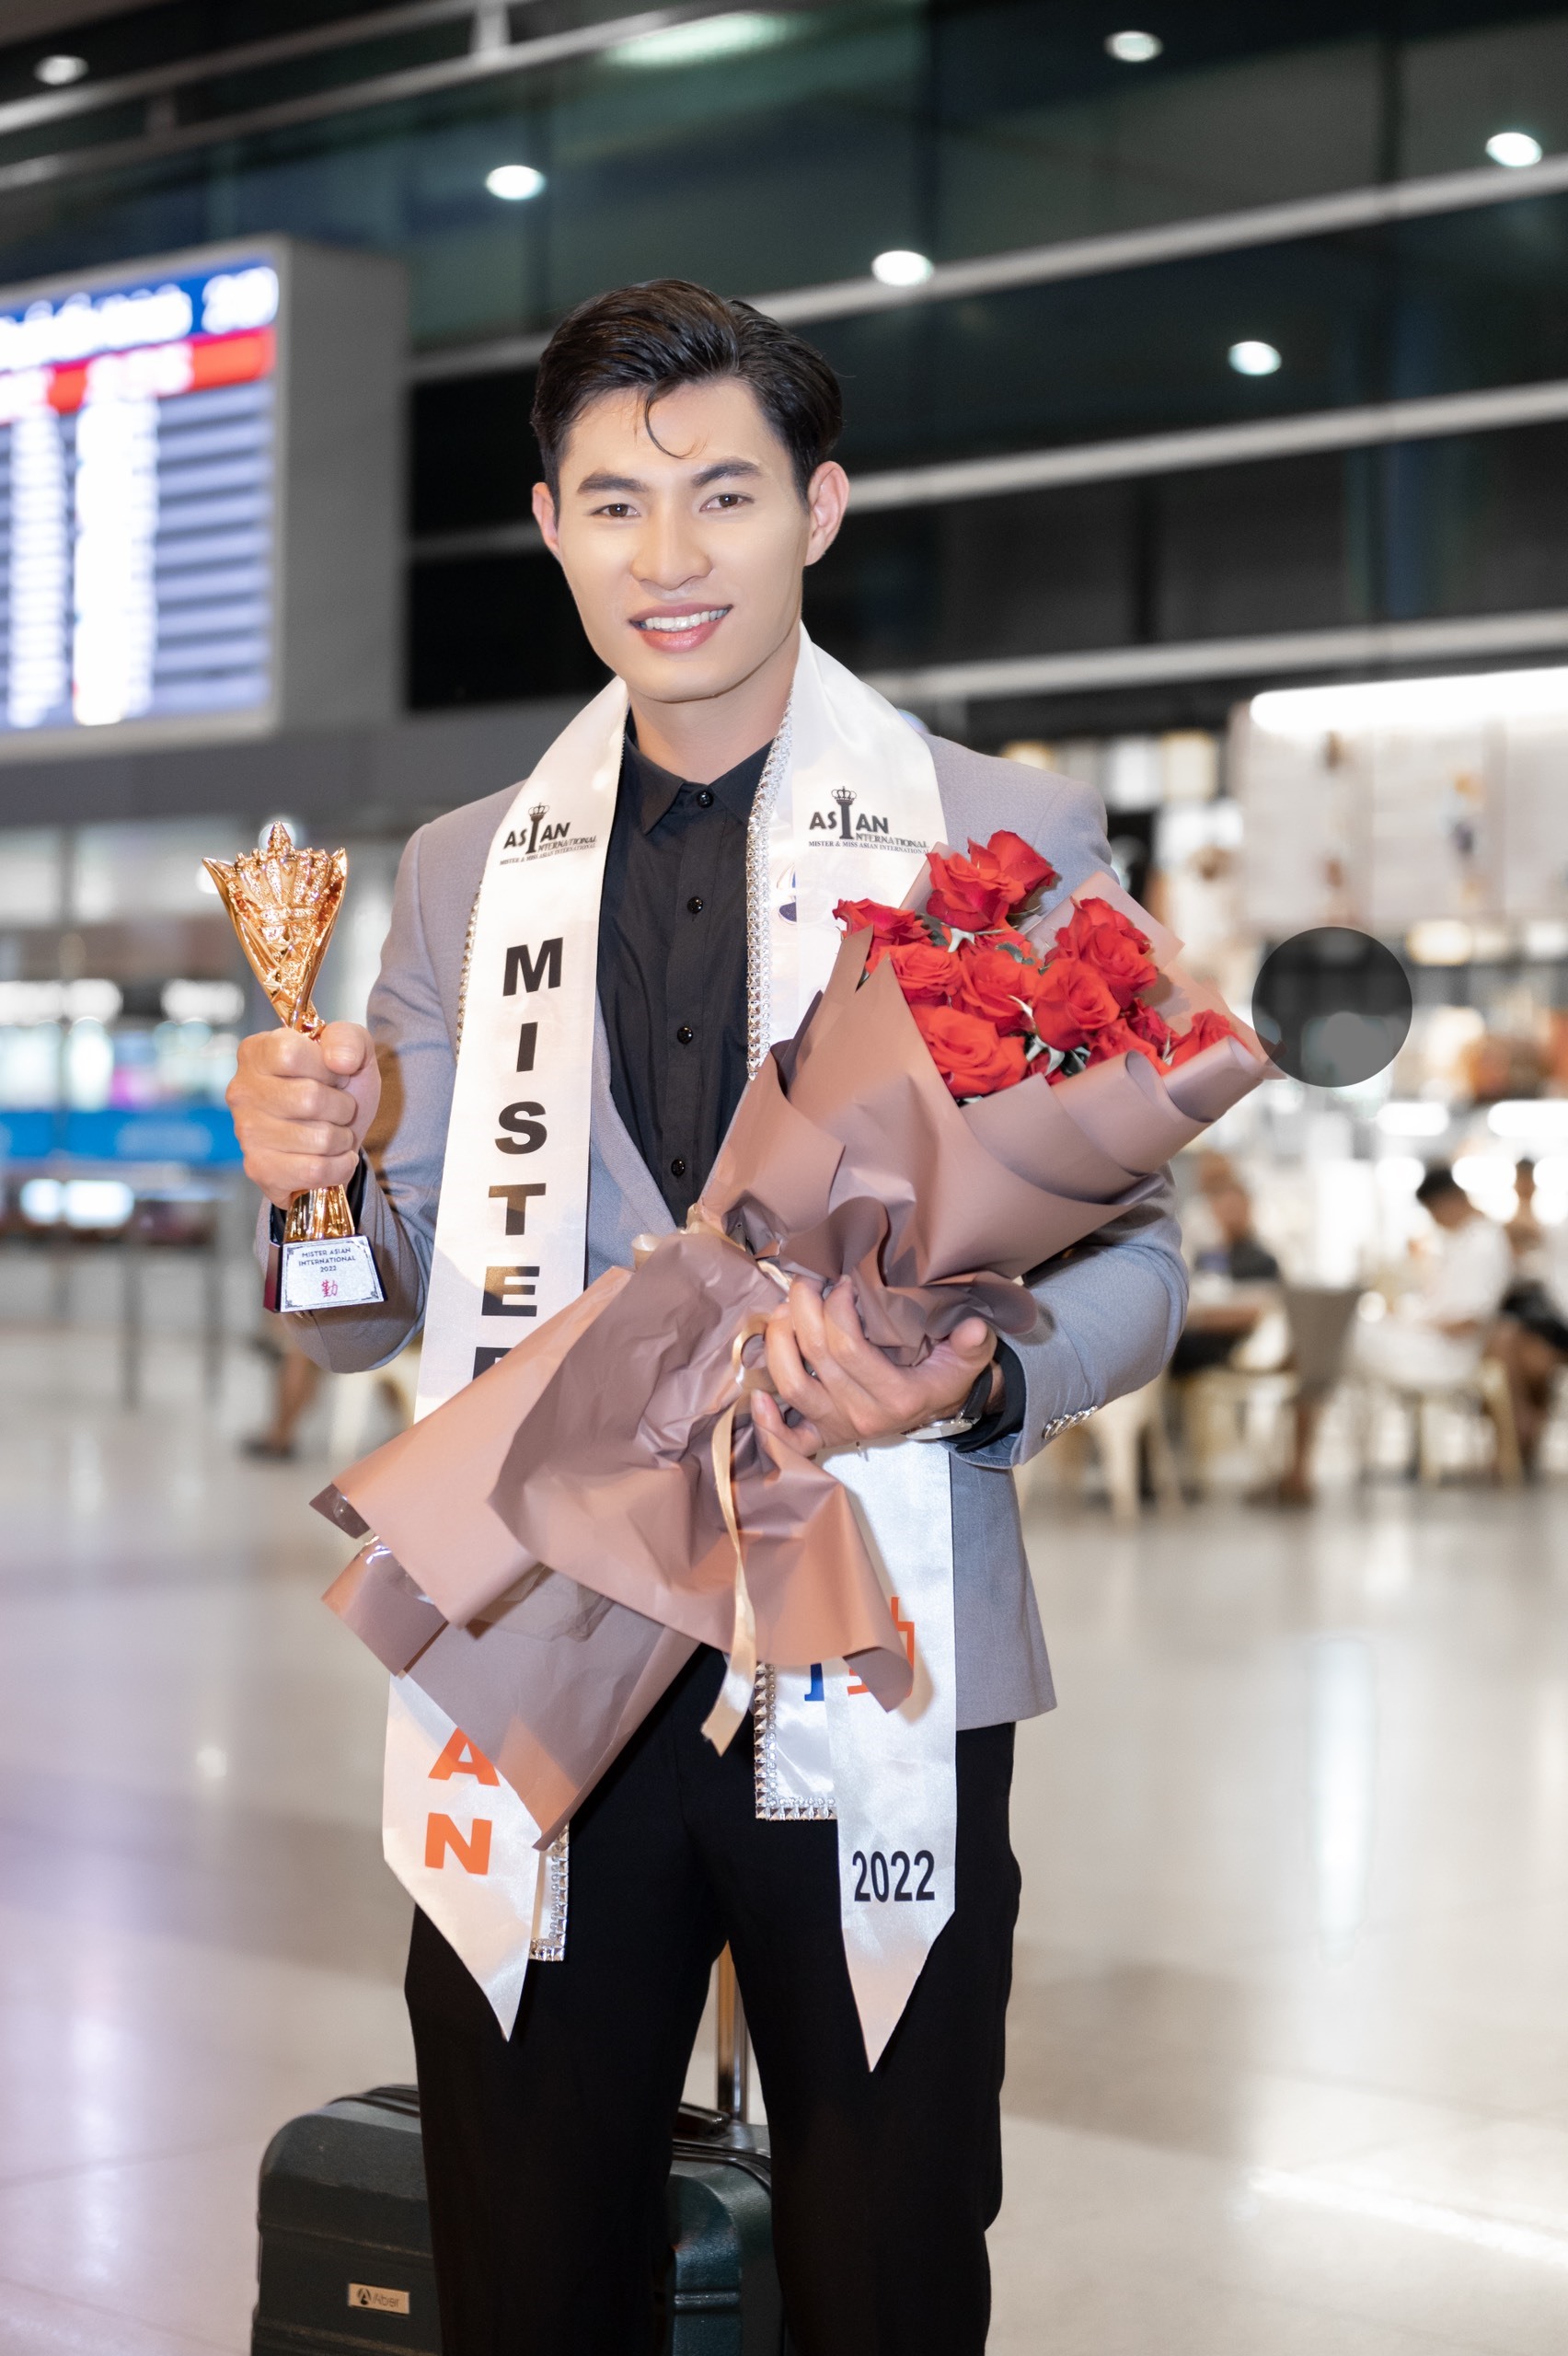 Á vương Phạm Văn Quốc xuất hiện giản dị tại sân bay Tân Sơn Nhất trong trang phục vest lịch lãm. Anh bày tỏ niềm hạnh phúc, vui mừng khi gặp lại người thân, bạn bè sau hơn nửa tháng chinh chiến nơi xứ người.